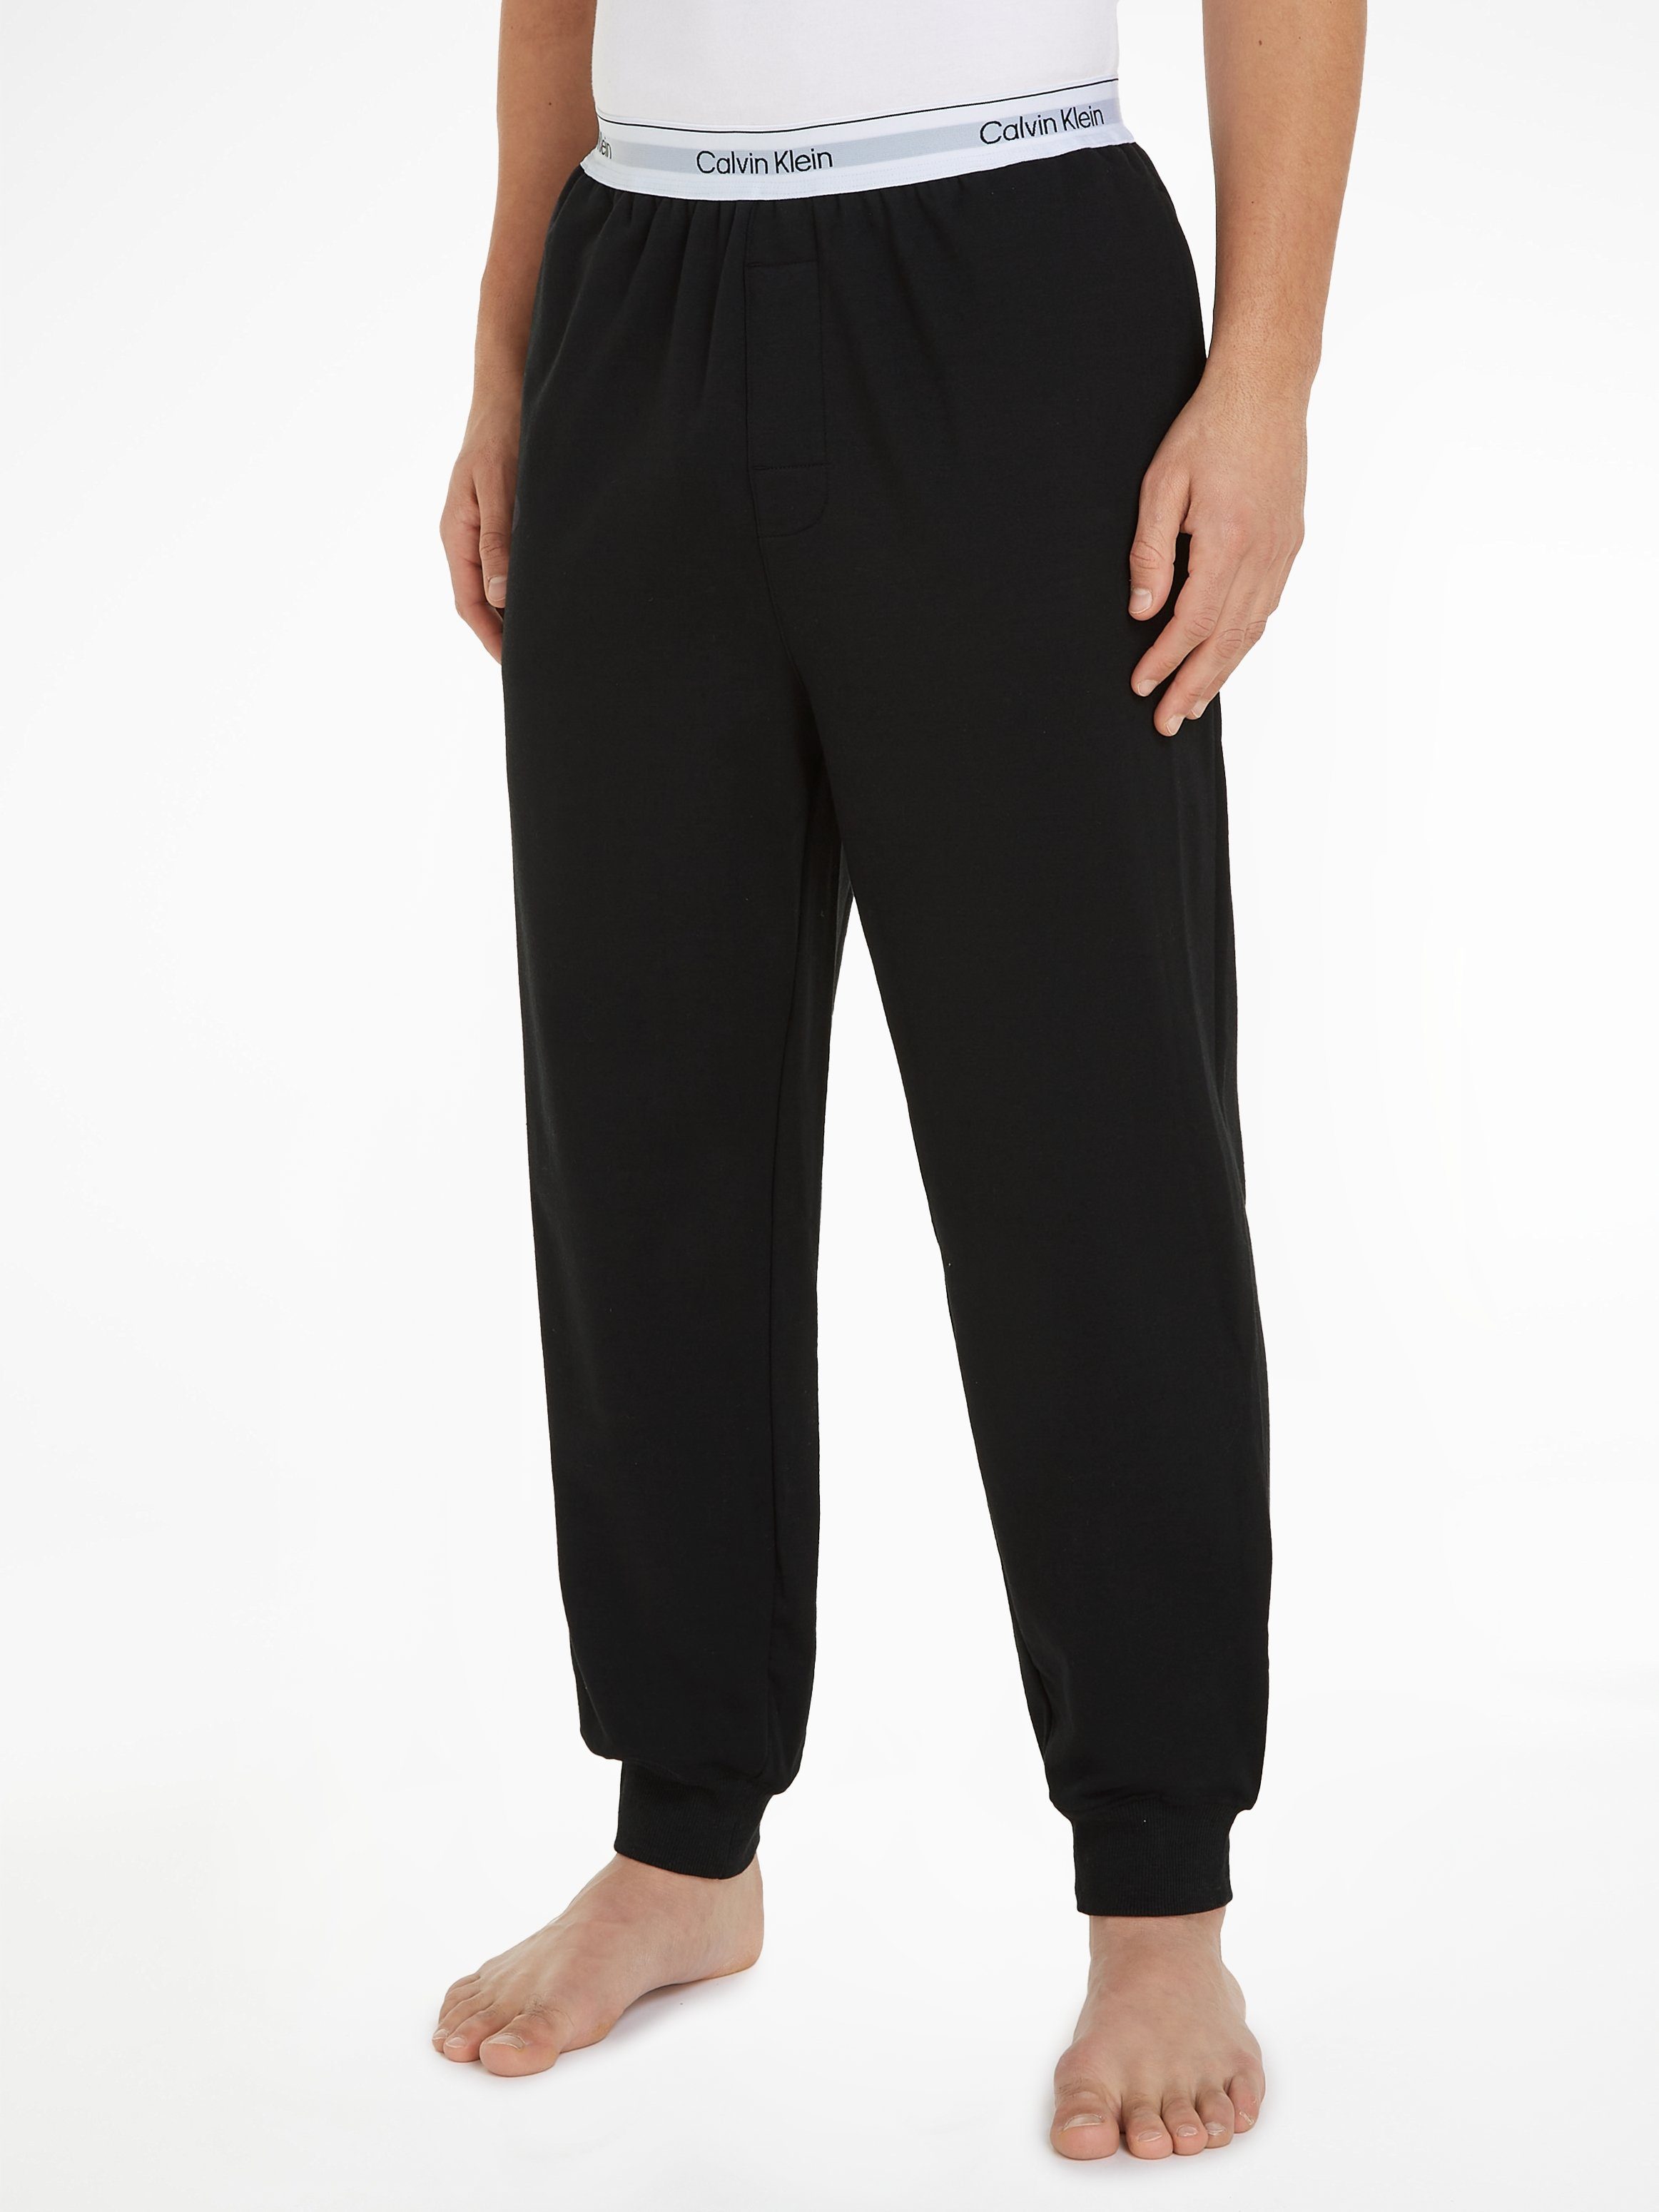 Calvin Klein Underwear Sweathose mit Calvin Klein Logoschriftzug am Wäschebund schwarz